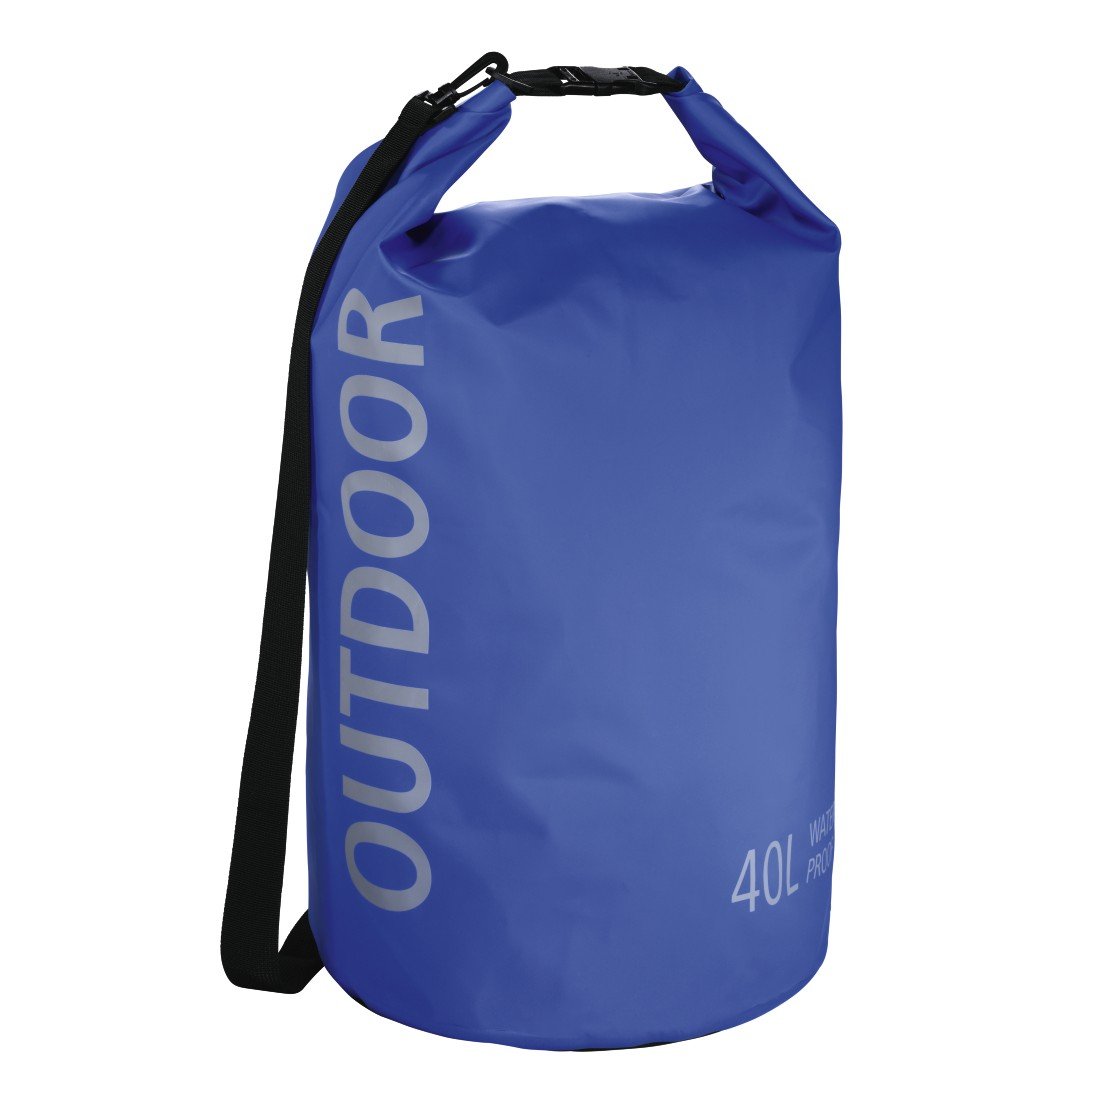 Hama wasserdichter Packsack, 40 l, Dry Bag mit Rolltop Verschluss, Schultergurt, (wasserdichter Seesack aus Tarpaulin, wasserfeste Outdoor Tasche für Rafting, Kajak, Camping) blau